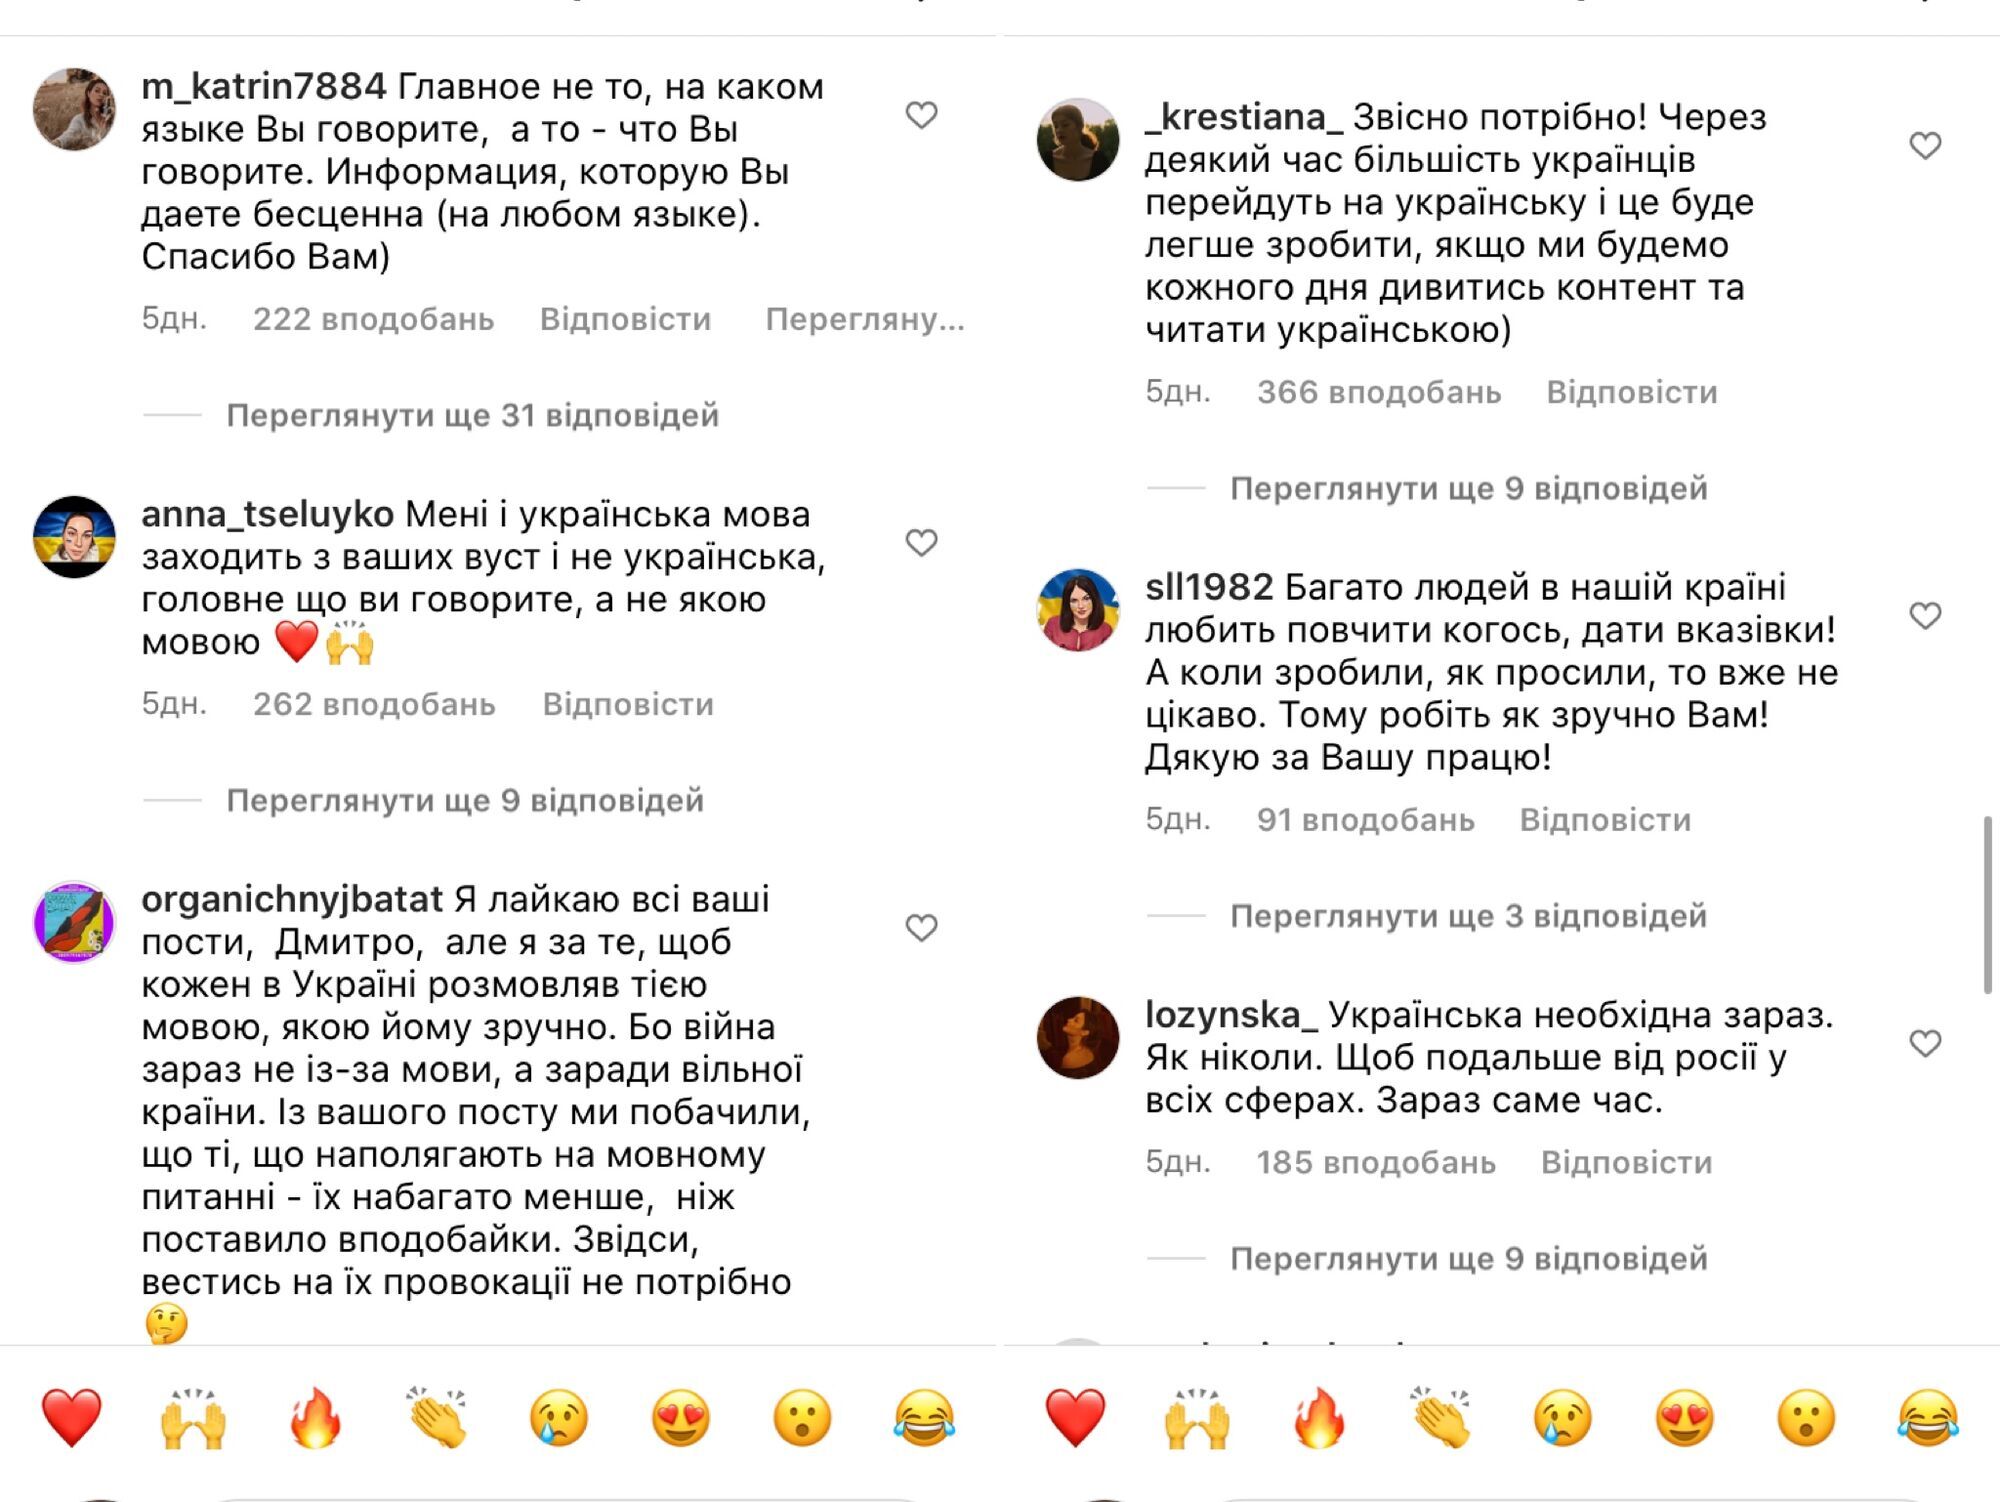 Дмитрий Карпачев спровоцировал дискуссию в сети из-за украиноязычного контента: он нужен? Почему нет лайков?